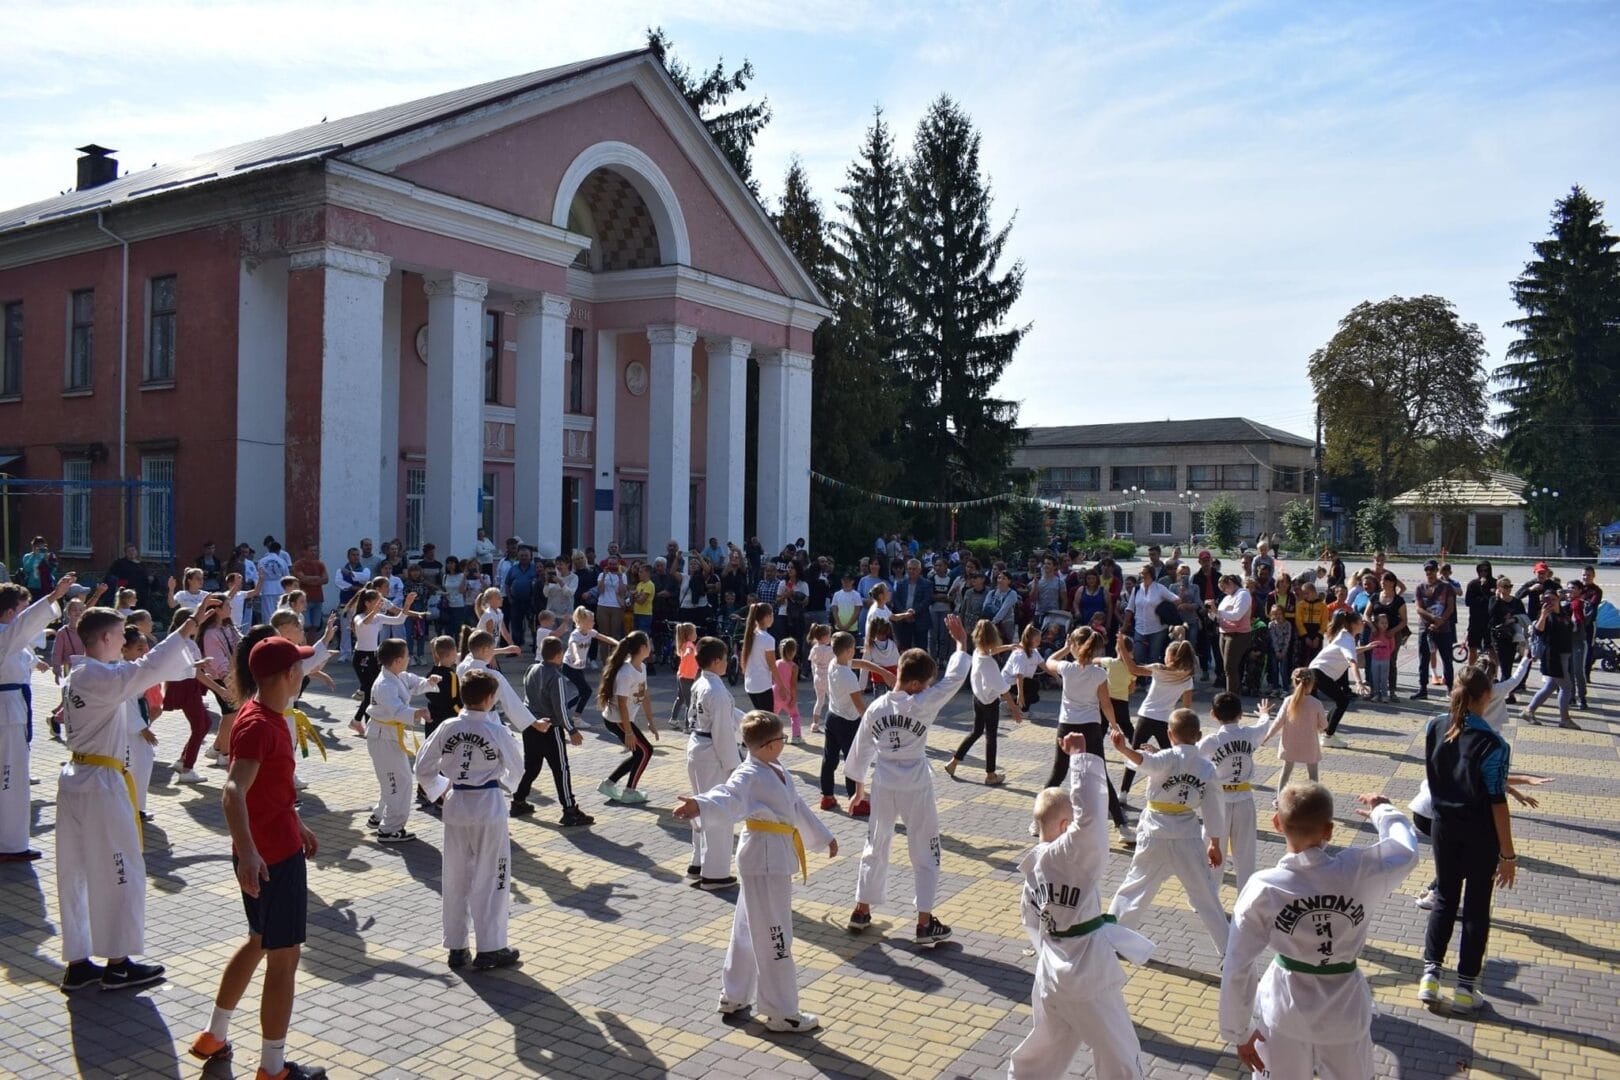 Taekwondo practitioners of the Community